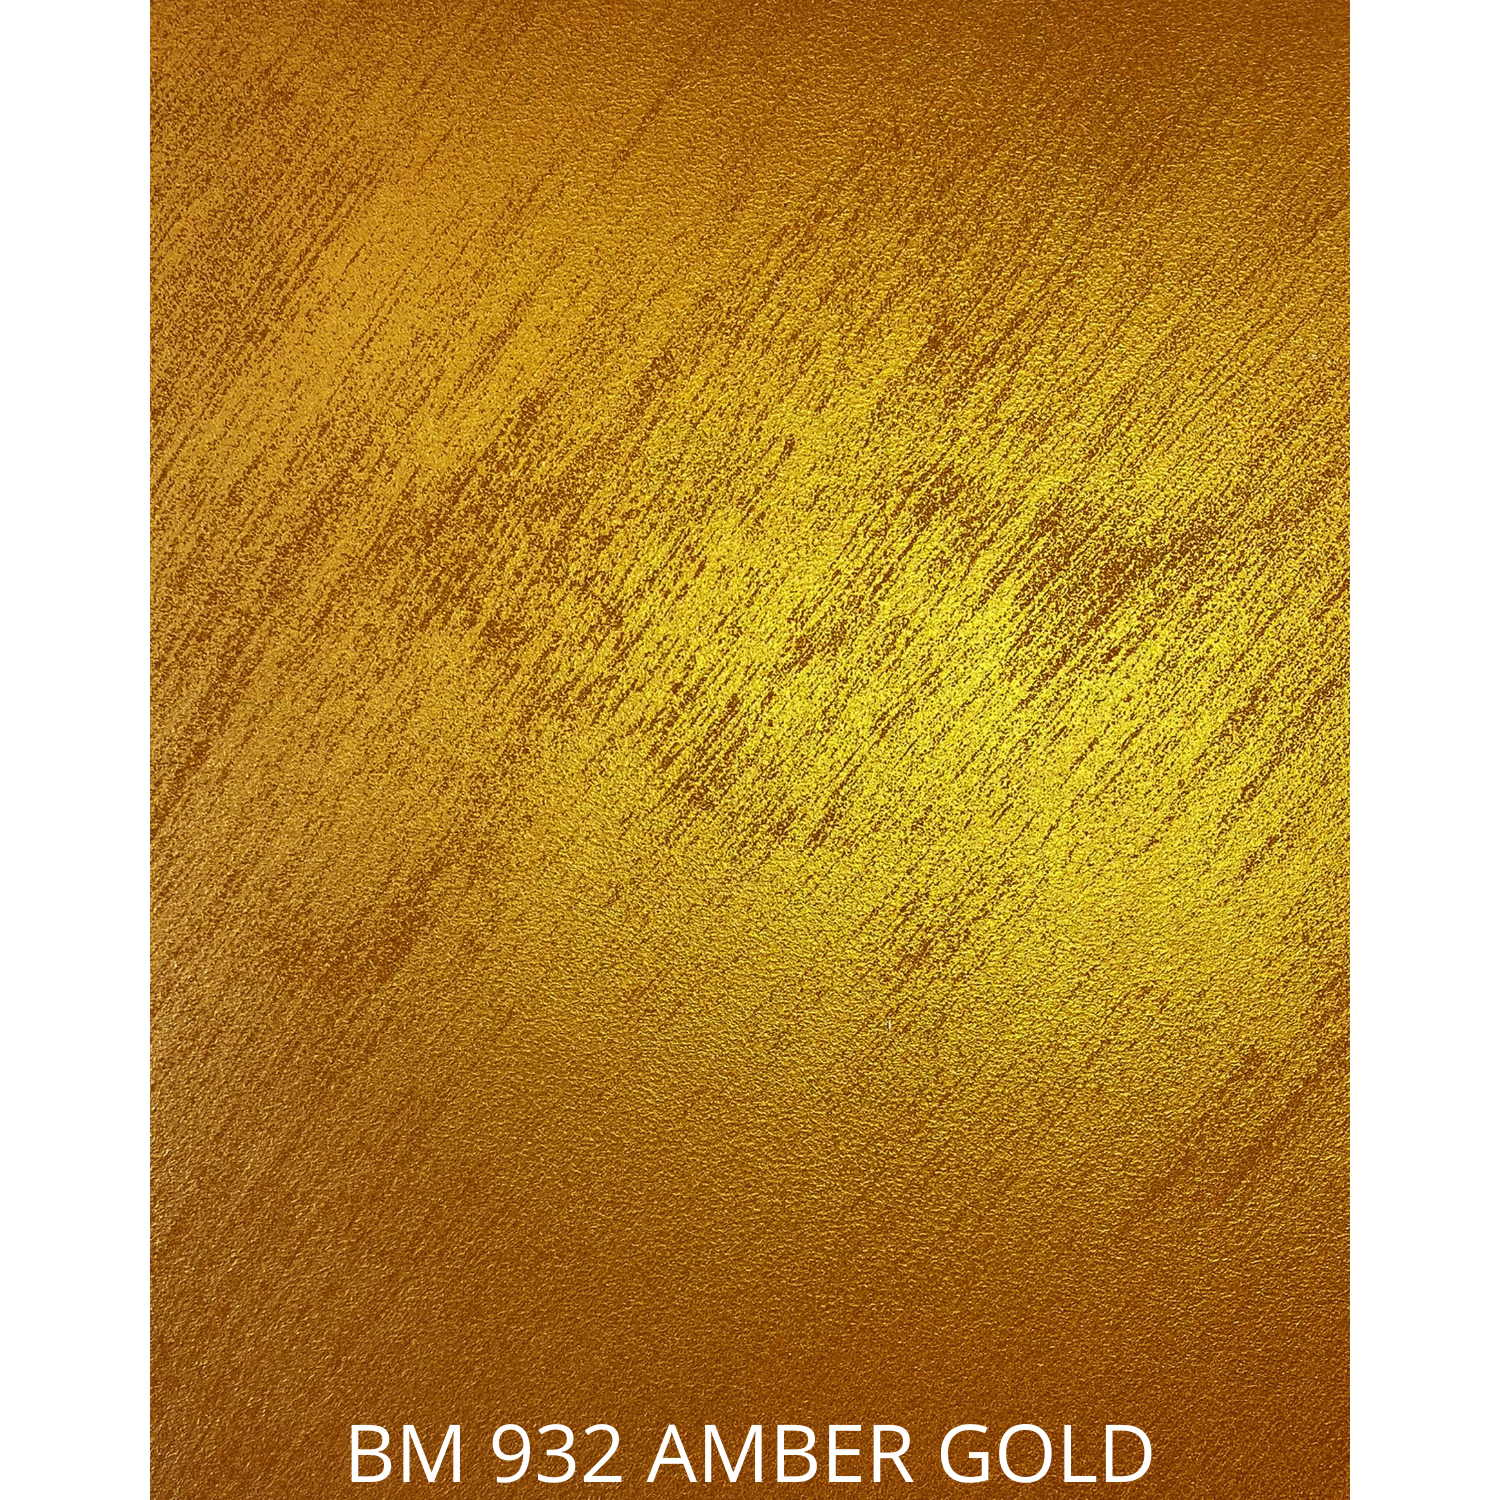 BM 932 AMBER GOLD